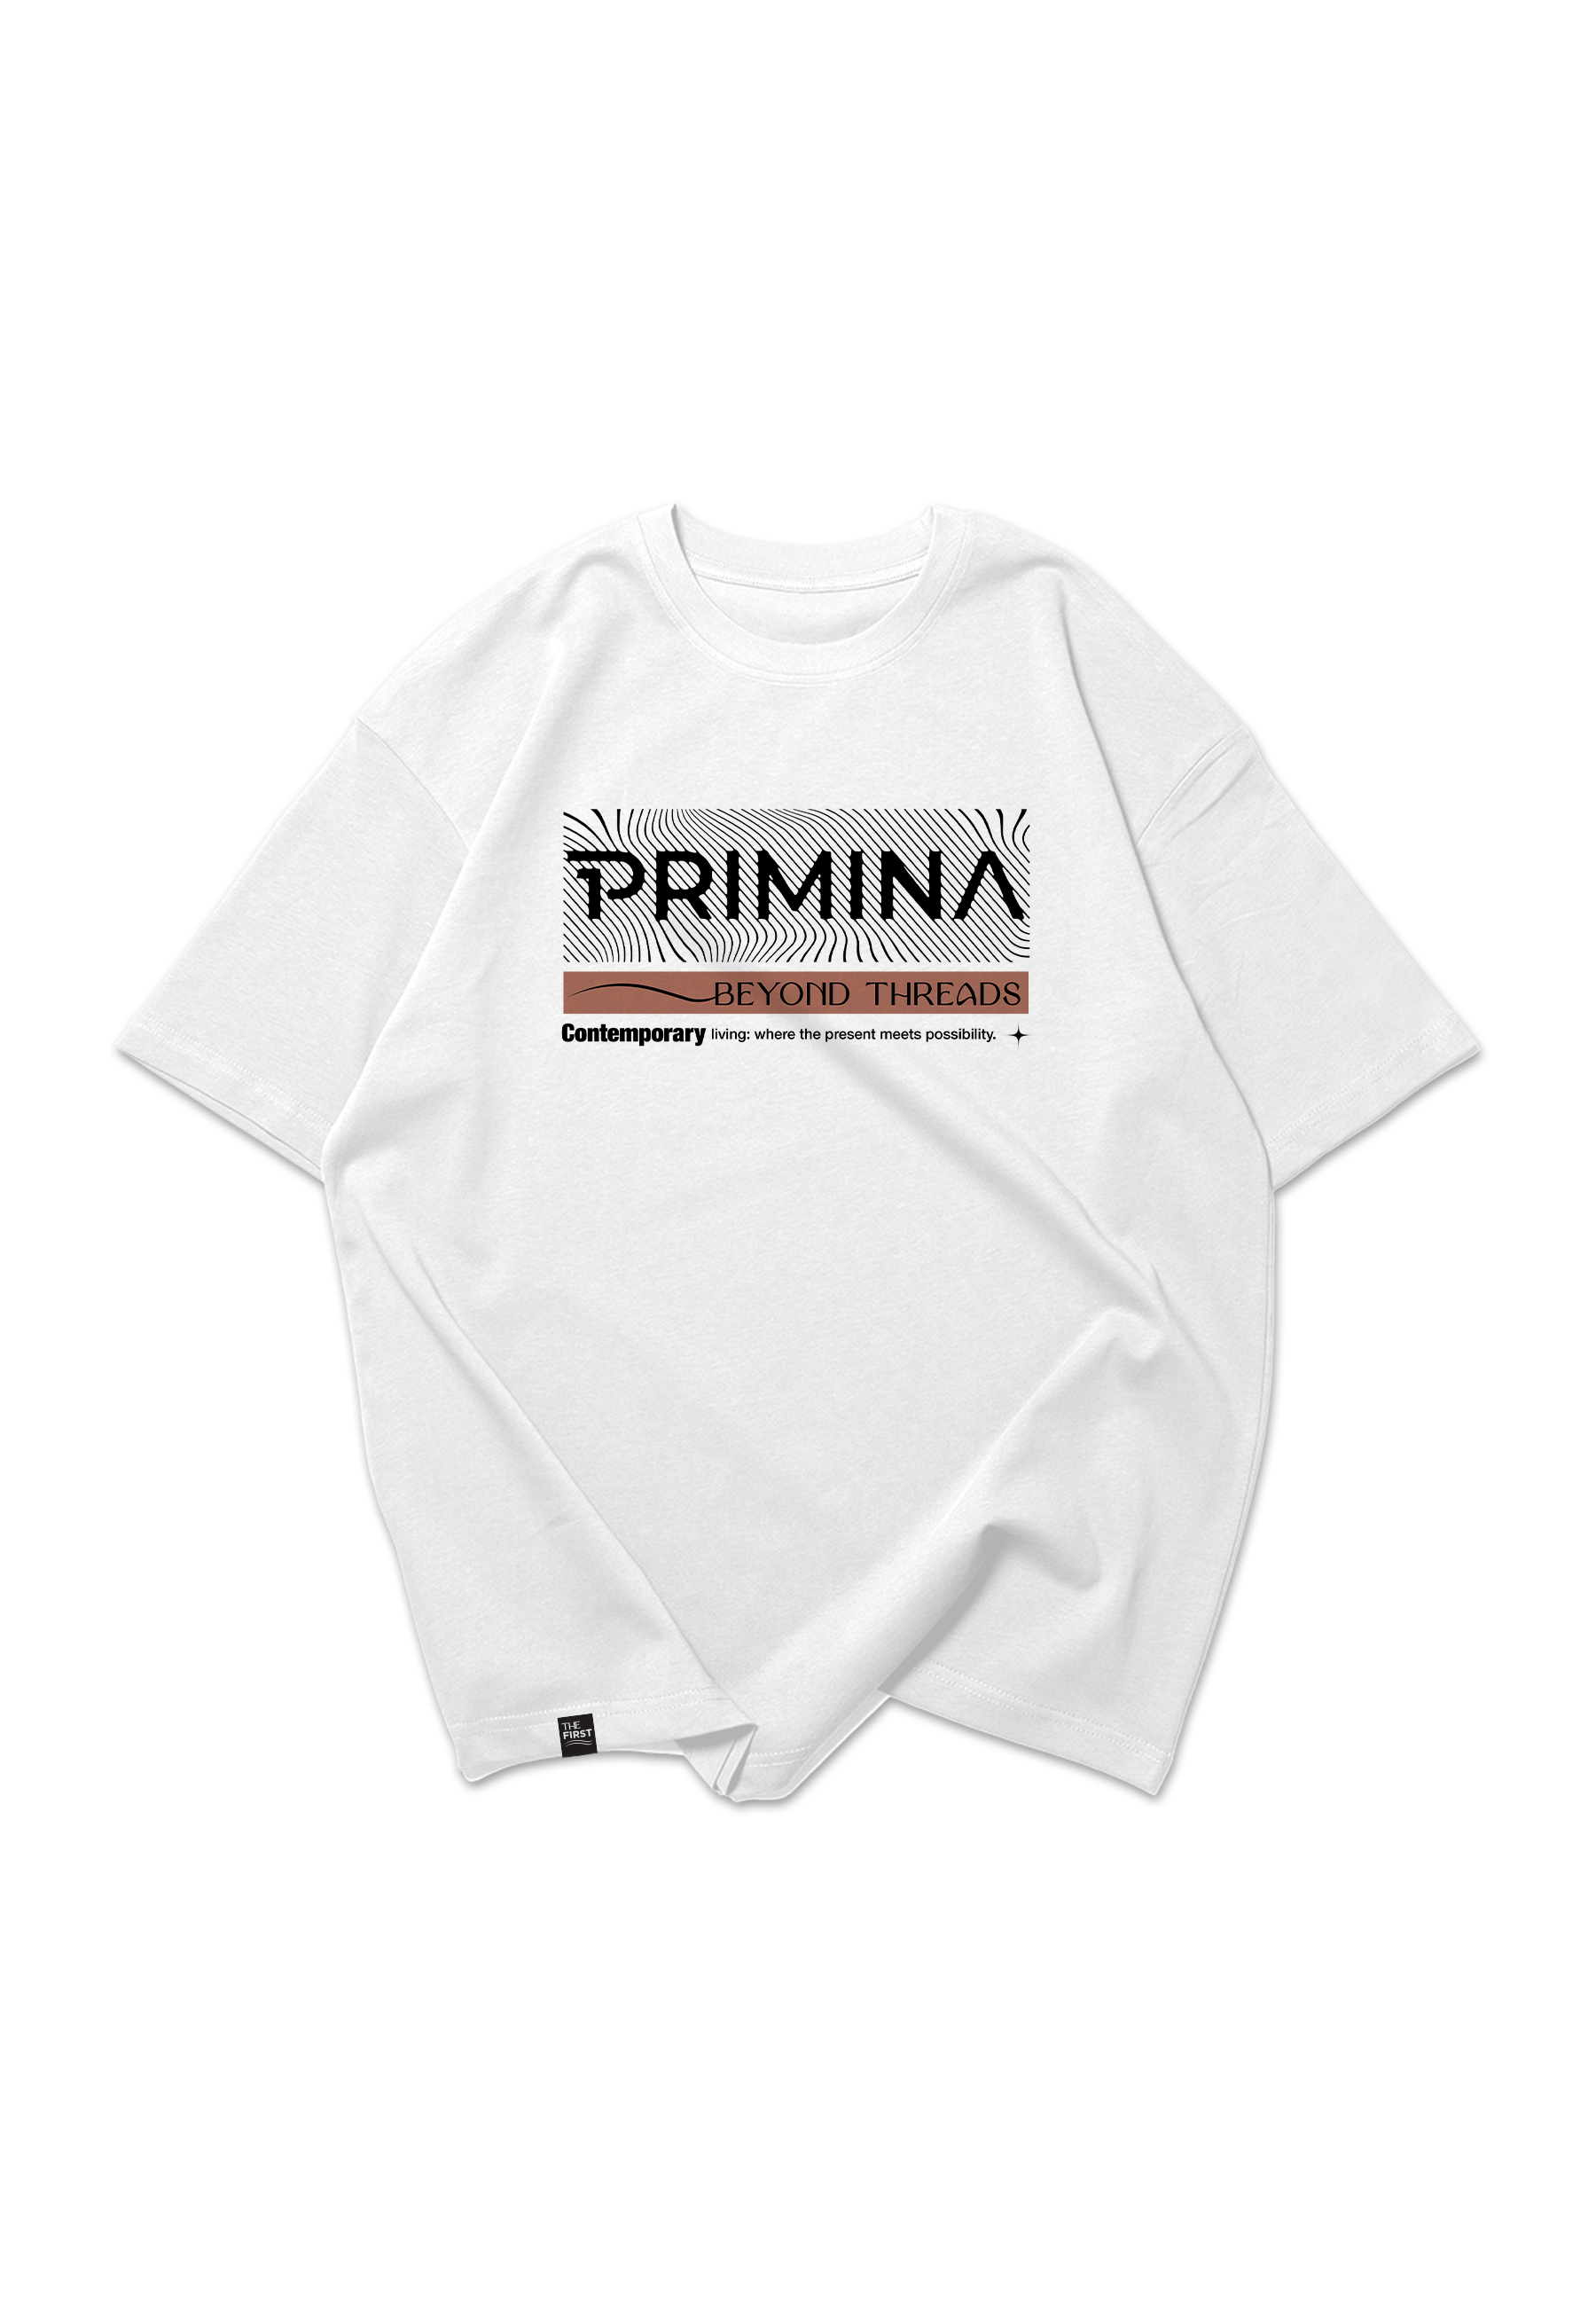 Buy Oversized T-Shirts For Women Online In Dubai & The UAE | Primina